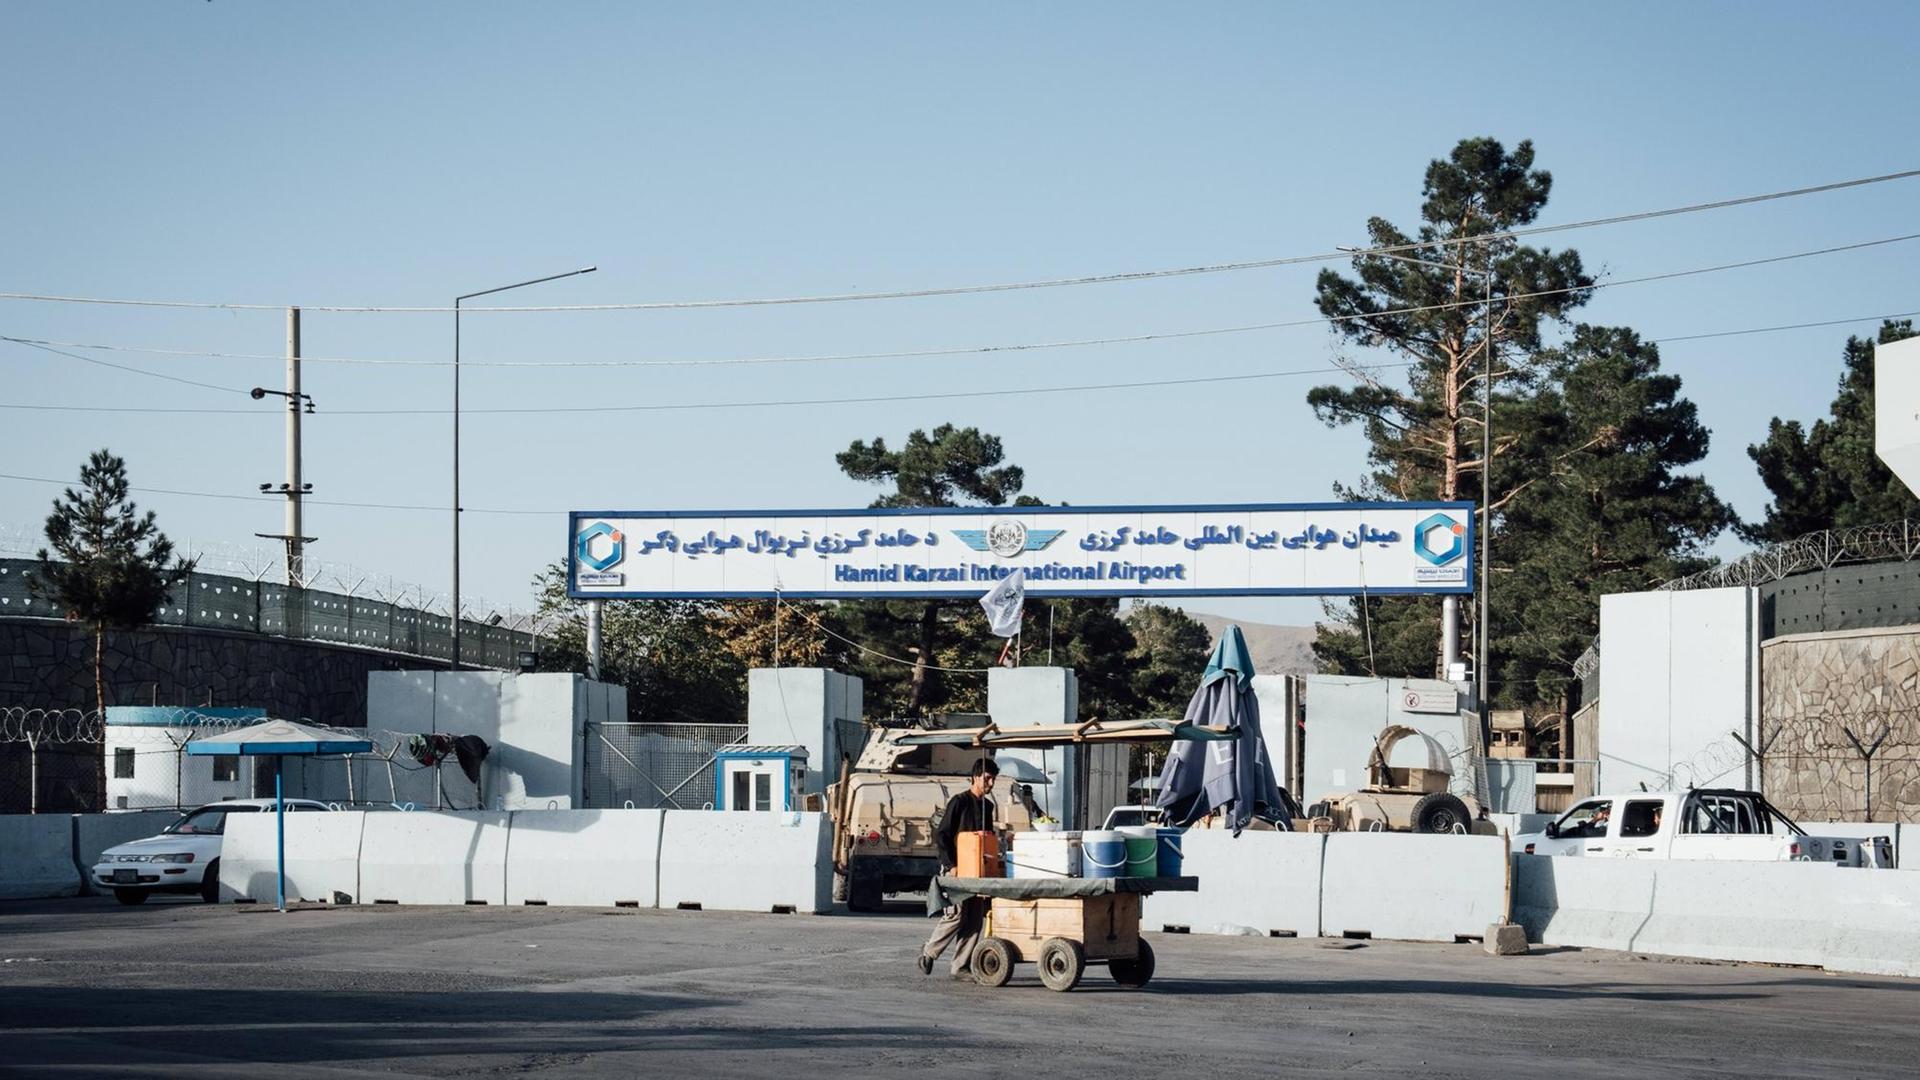 Der Eingang des internationalen Flughafens von Kabul.